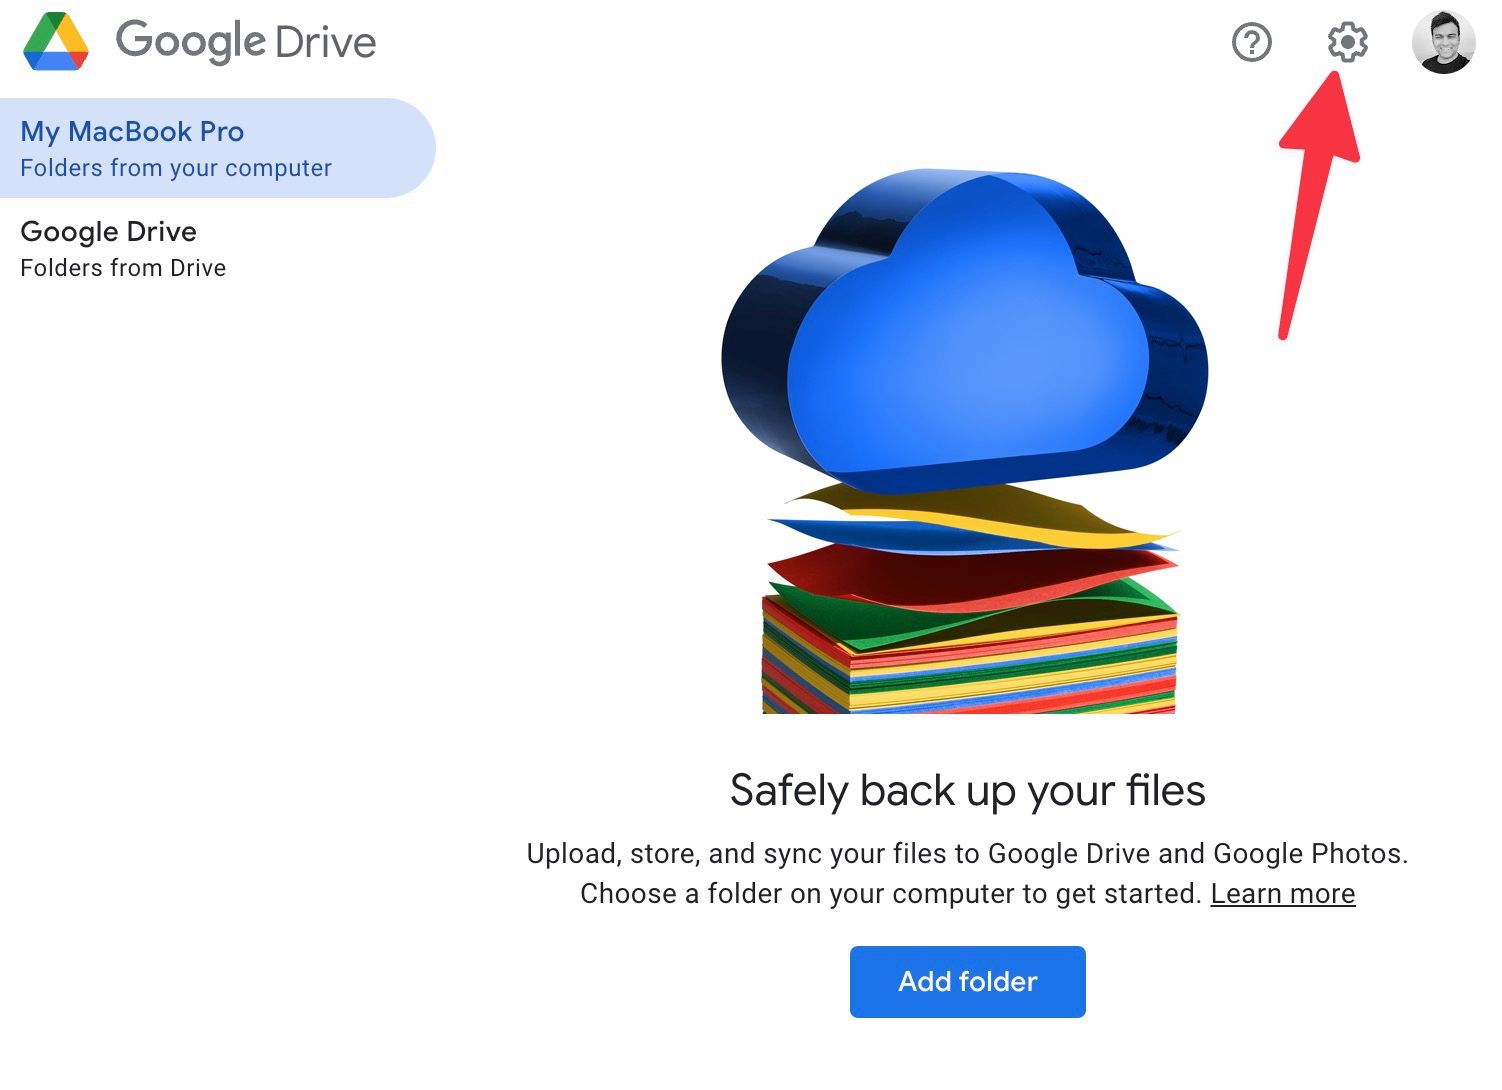 Clique na engrenagem no canto superior direito para acessar as configurações do Google Drive no Mac